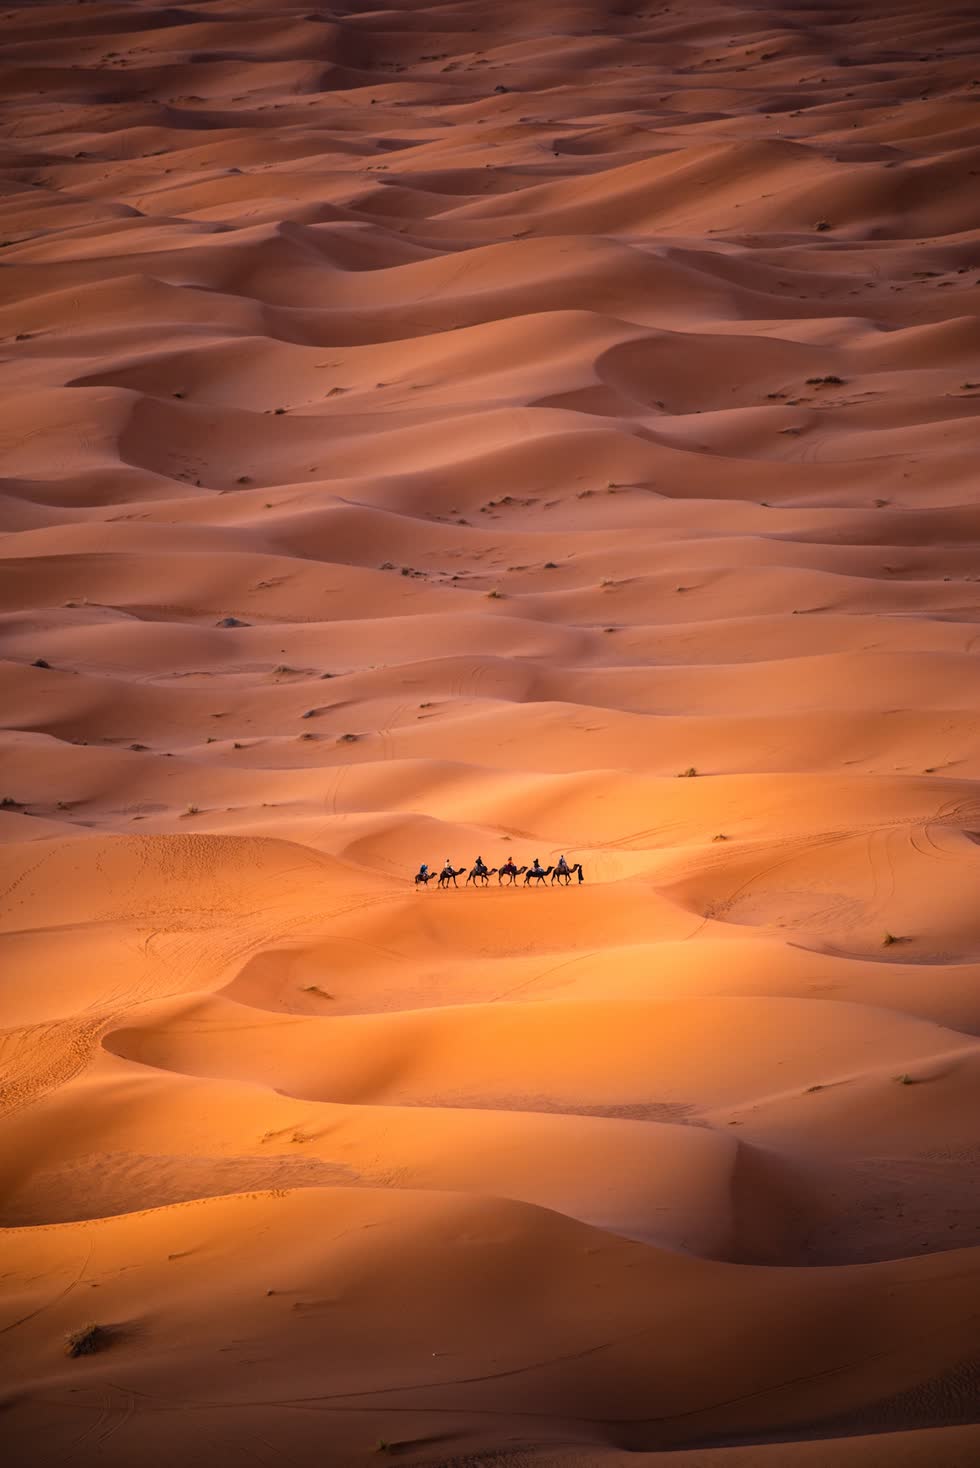   Nhóm người du mục đang di chuyển qua sa mạc Sahara. Ảnh: Carles Alonso.  